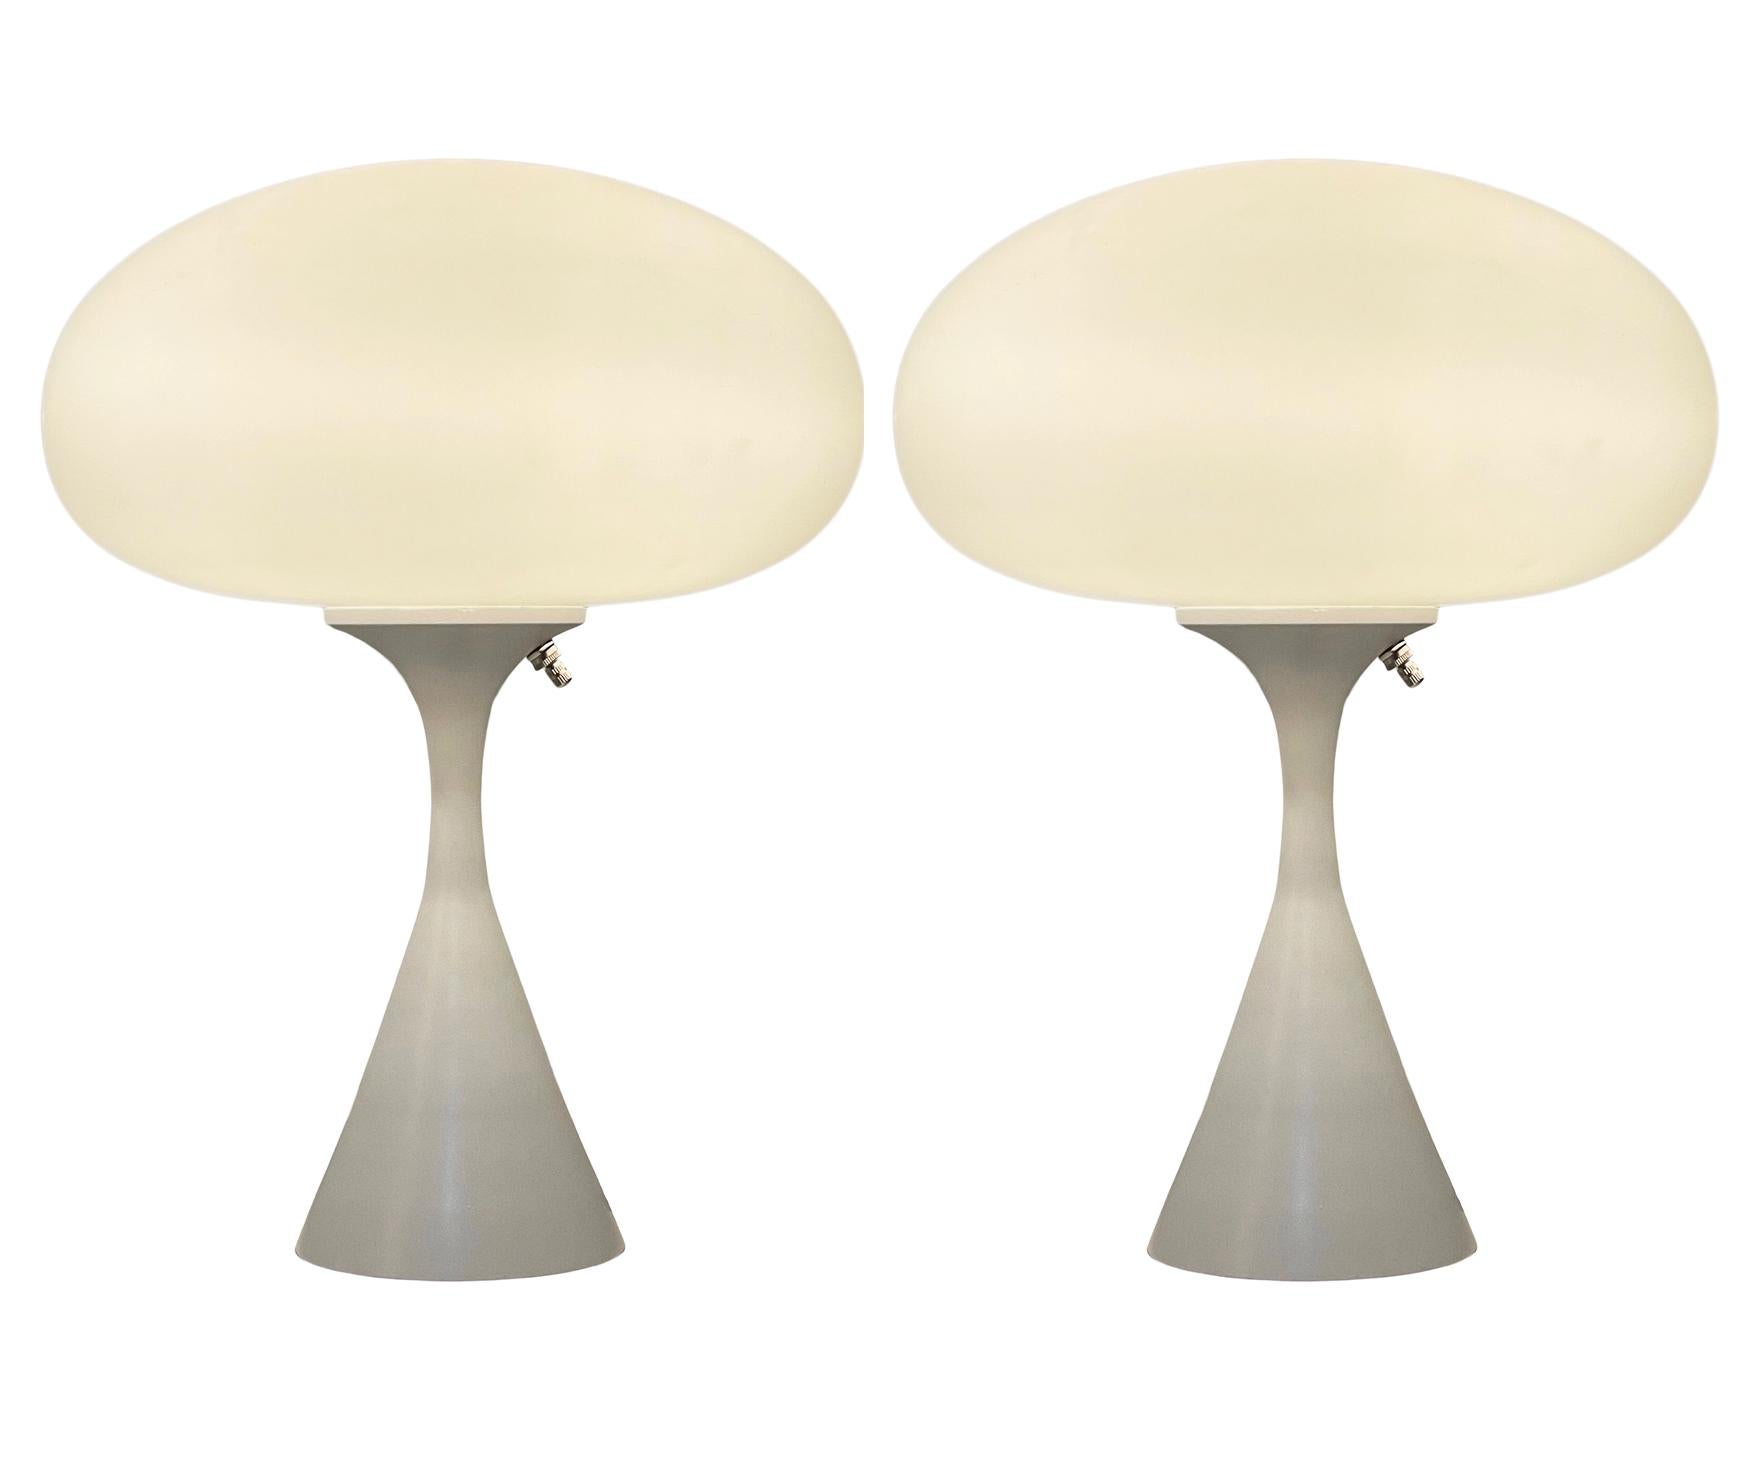 Une belle paire de lampes de table assorties en forme de champignon conique d'après Laurel Lamp Company. La lampe comporte une base en aluminium moulé avec un revêtement en poudre blanc et un abat-jour en verre dépoli soufflé à la bouche. Le prix